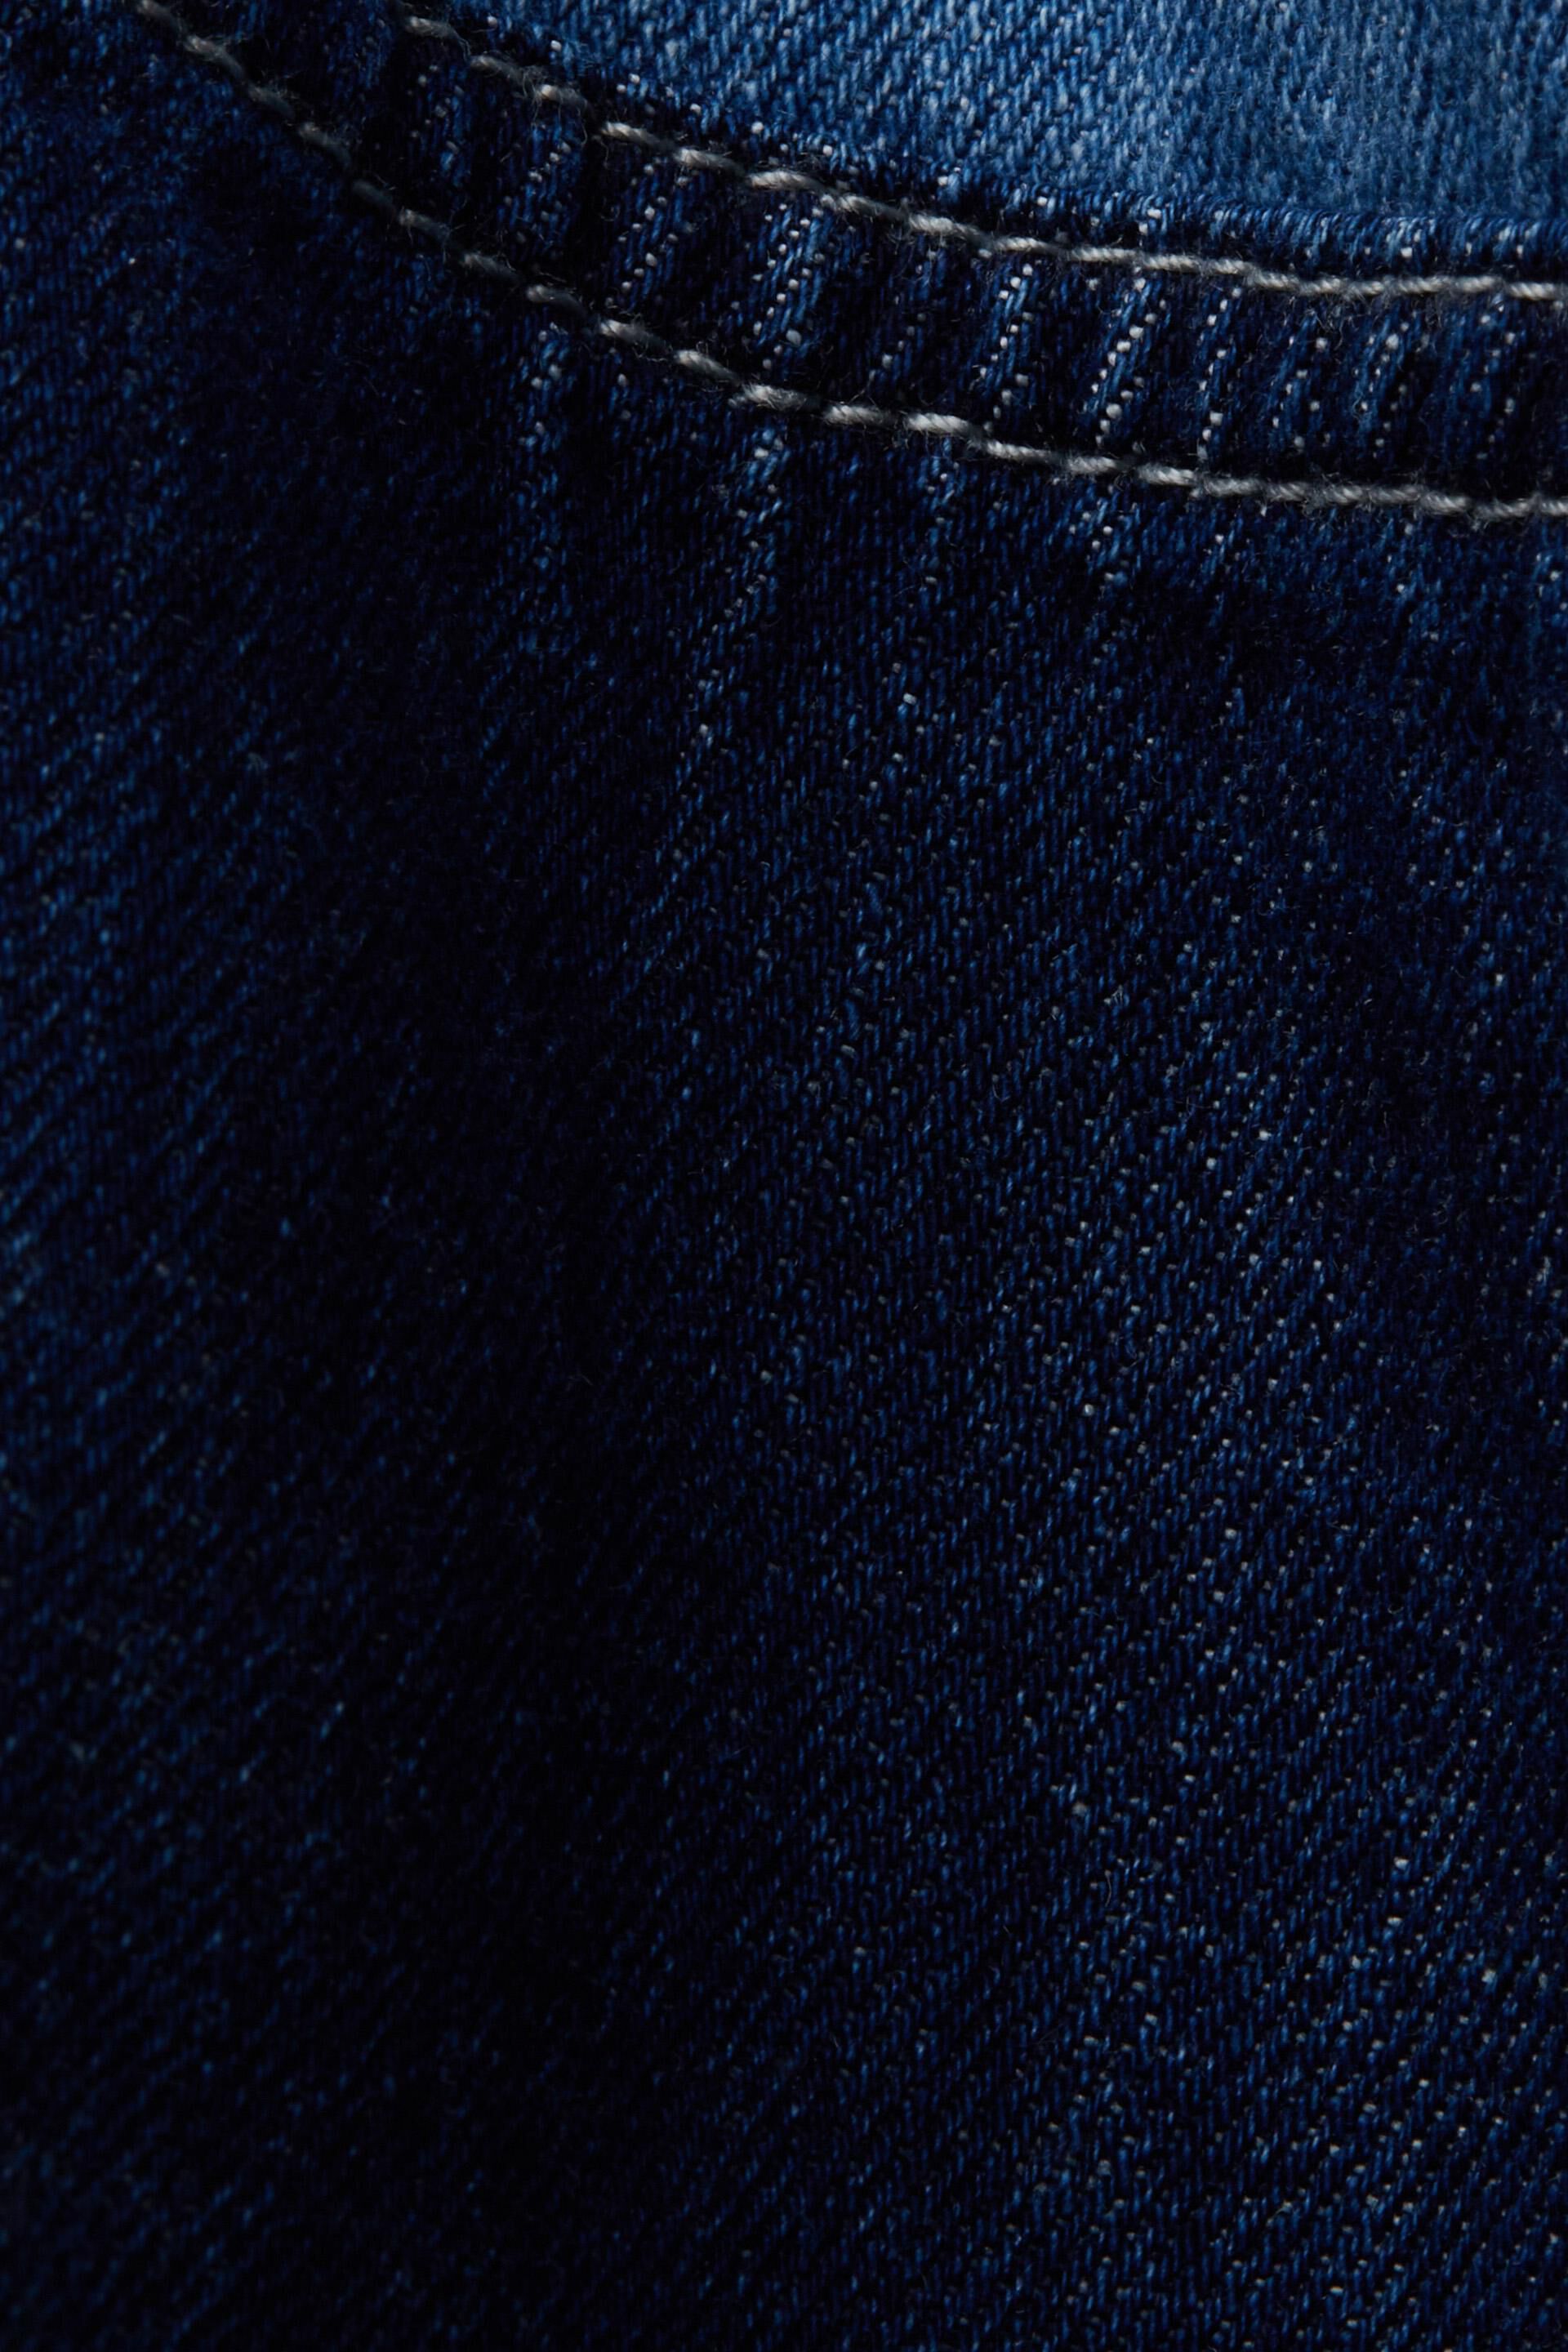 ESPRIT - Patchwork jeans shirt, cotton blend at our online shop